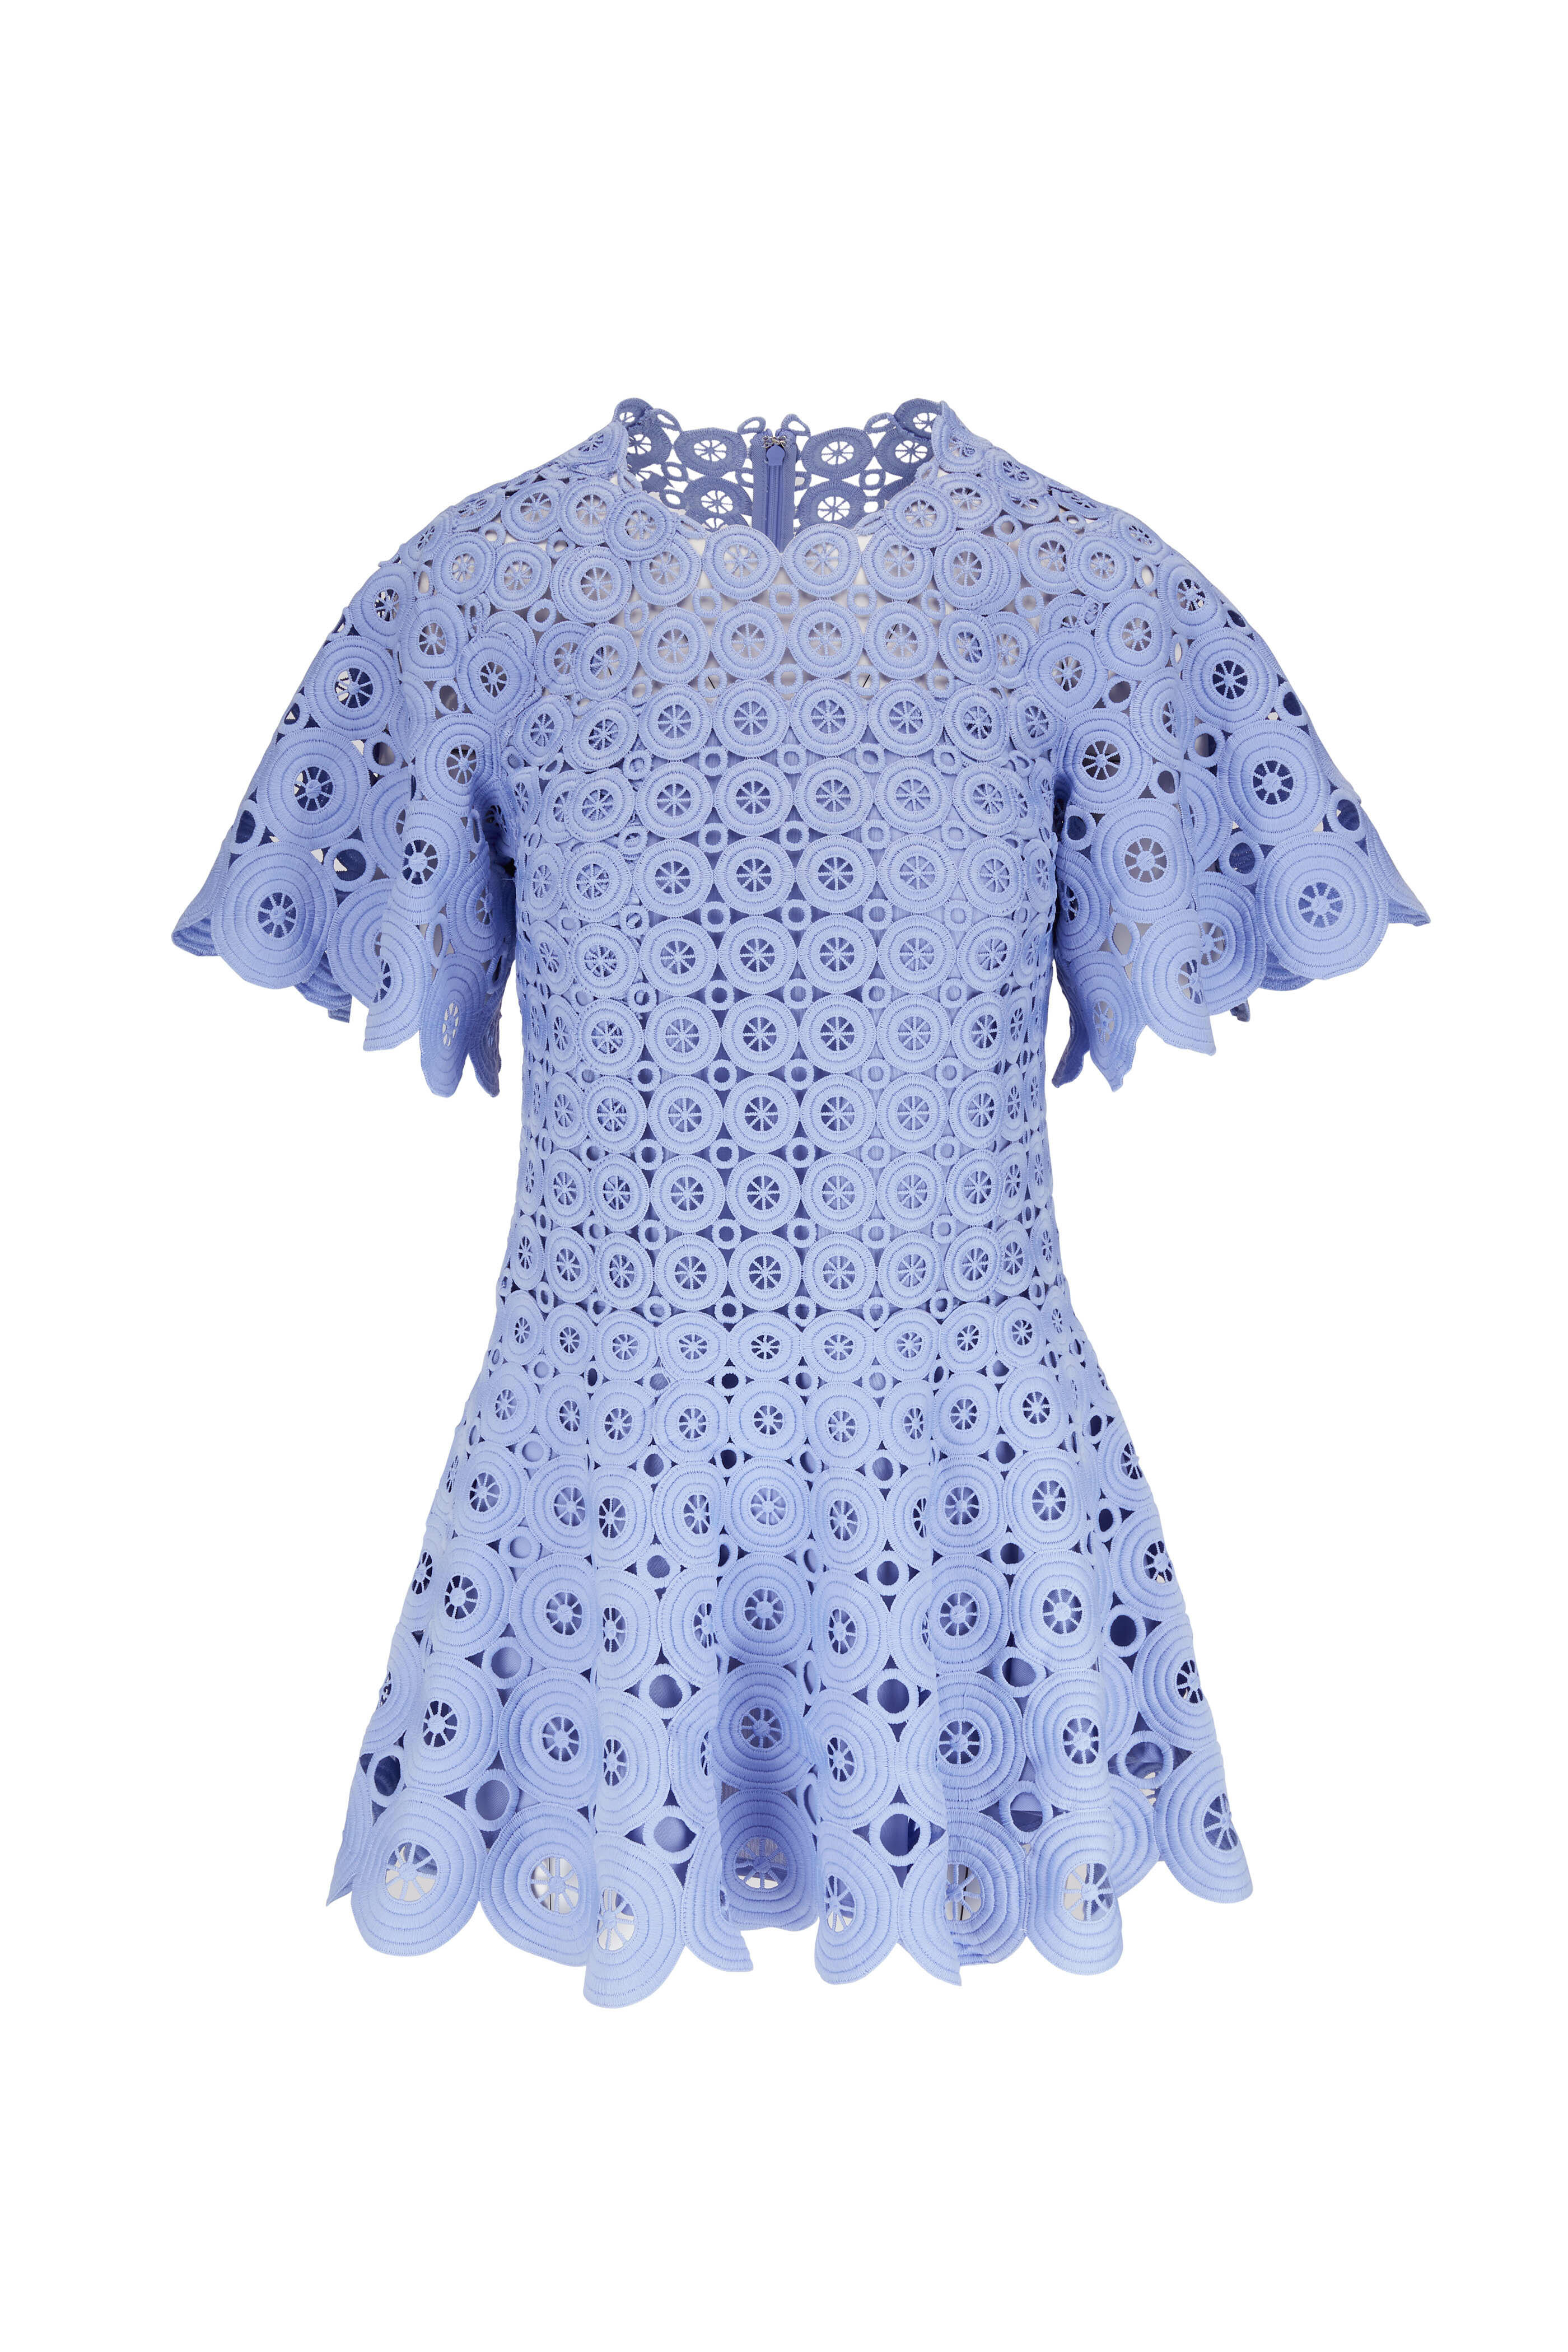 Jonathan Simkhai - Laney Hydrangea Circle Lace Dress